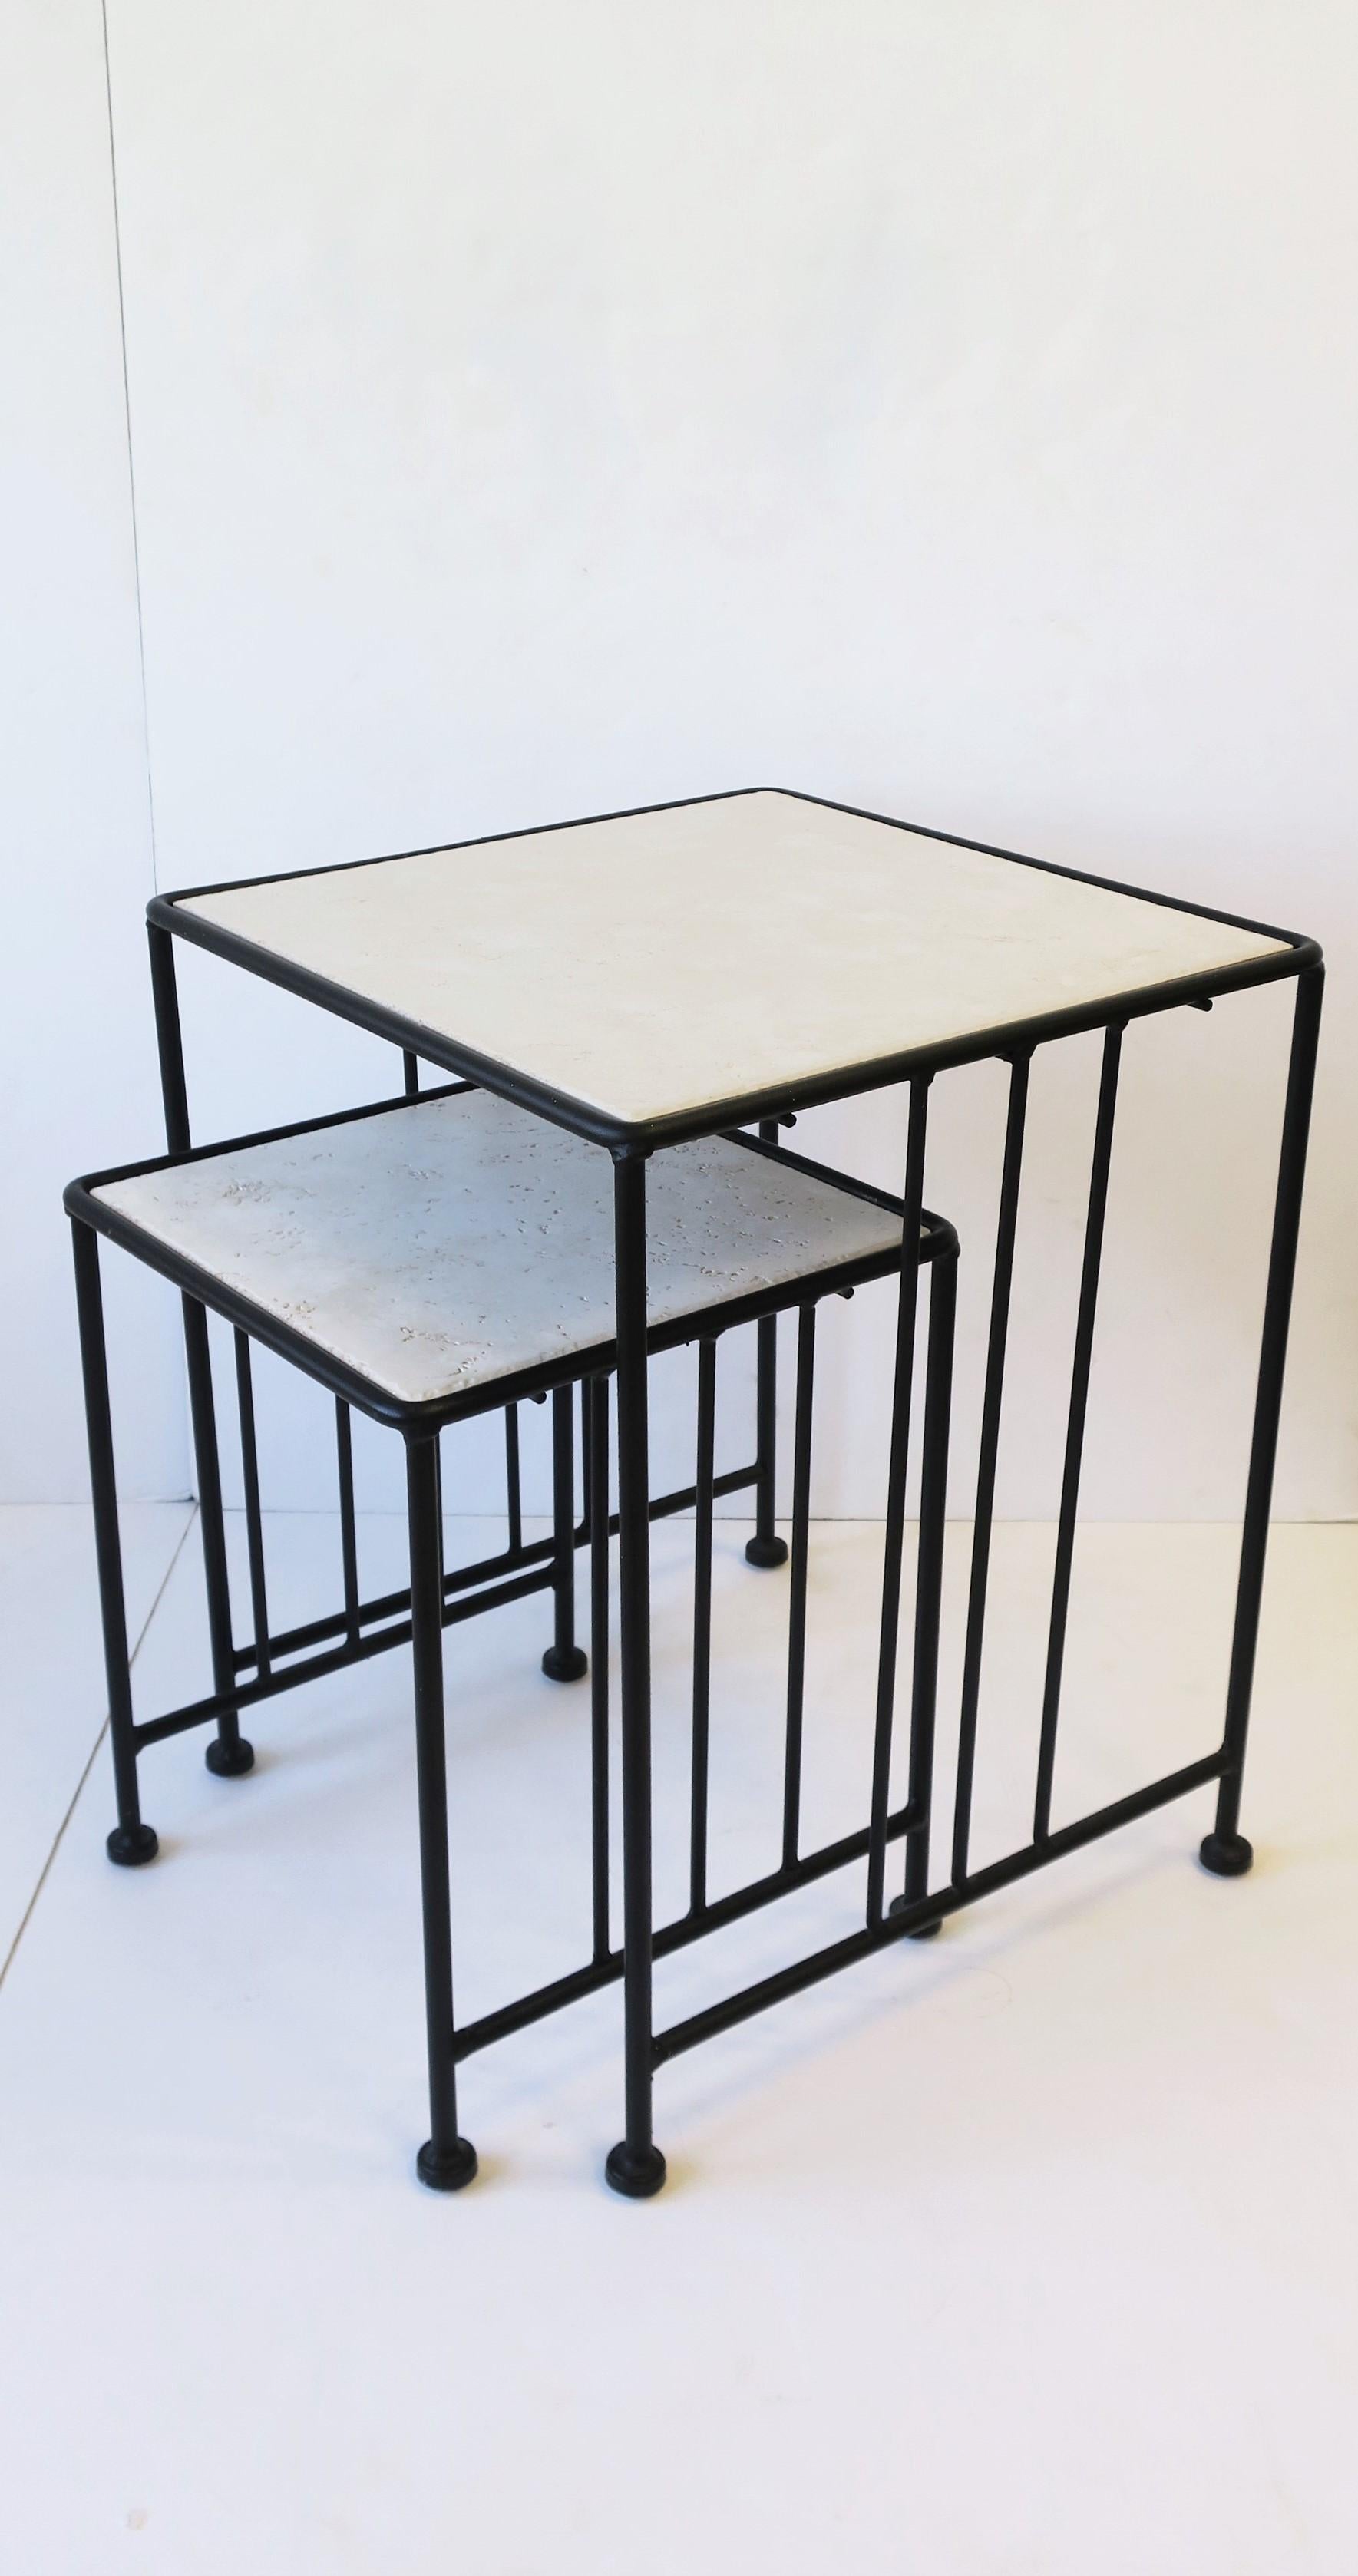 Ensemble de tables gigognes italiennes dans le style Art déco Bauhaus, vers la fin du XXe siècle, Italie. L'ensemble peut être utilisé comme table d'appoint (table supérieure) et comme table 